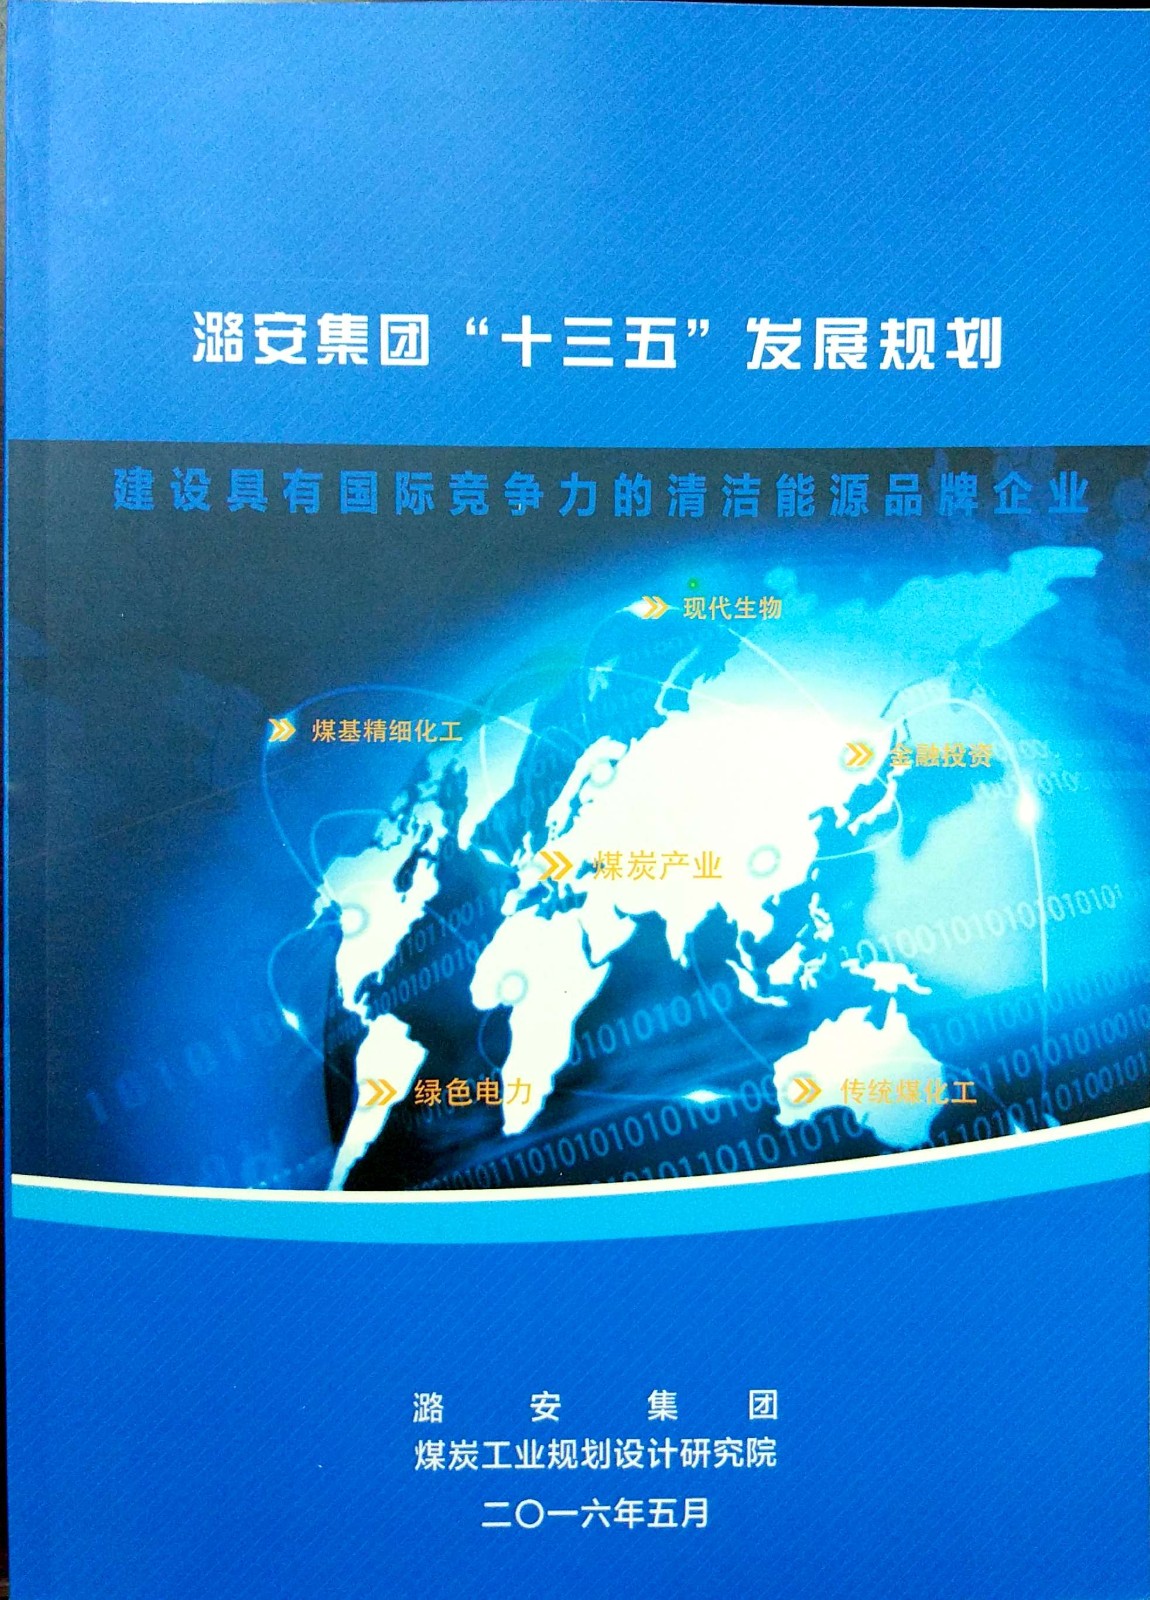 2016-05潞安集团“十三五”发展规划(1).jpg